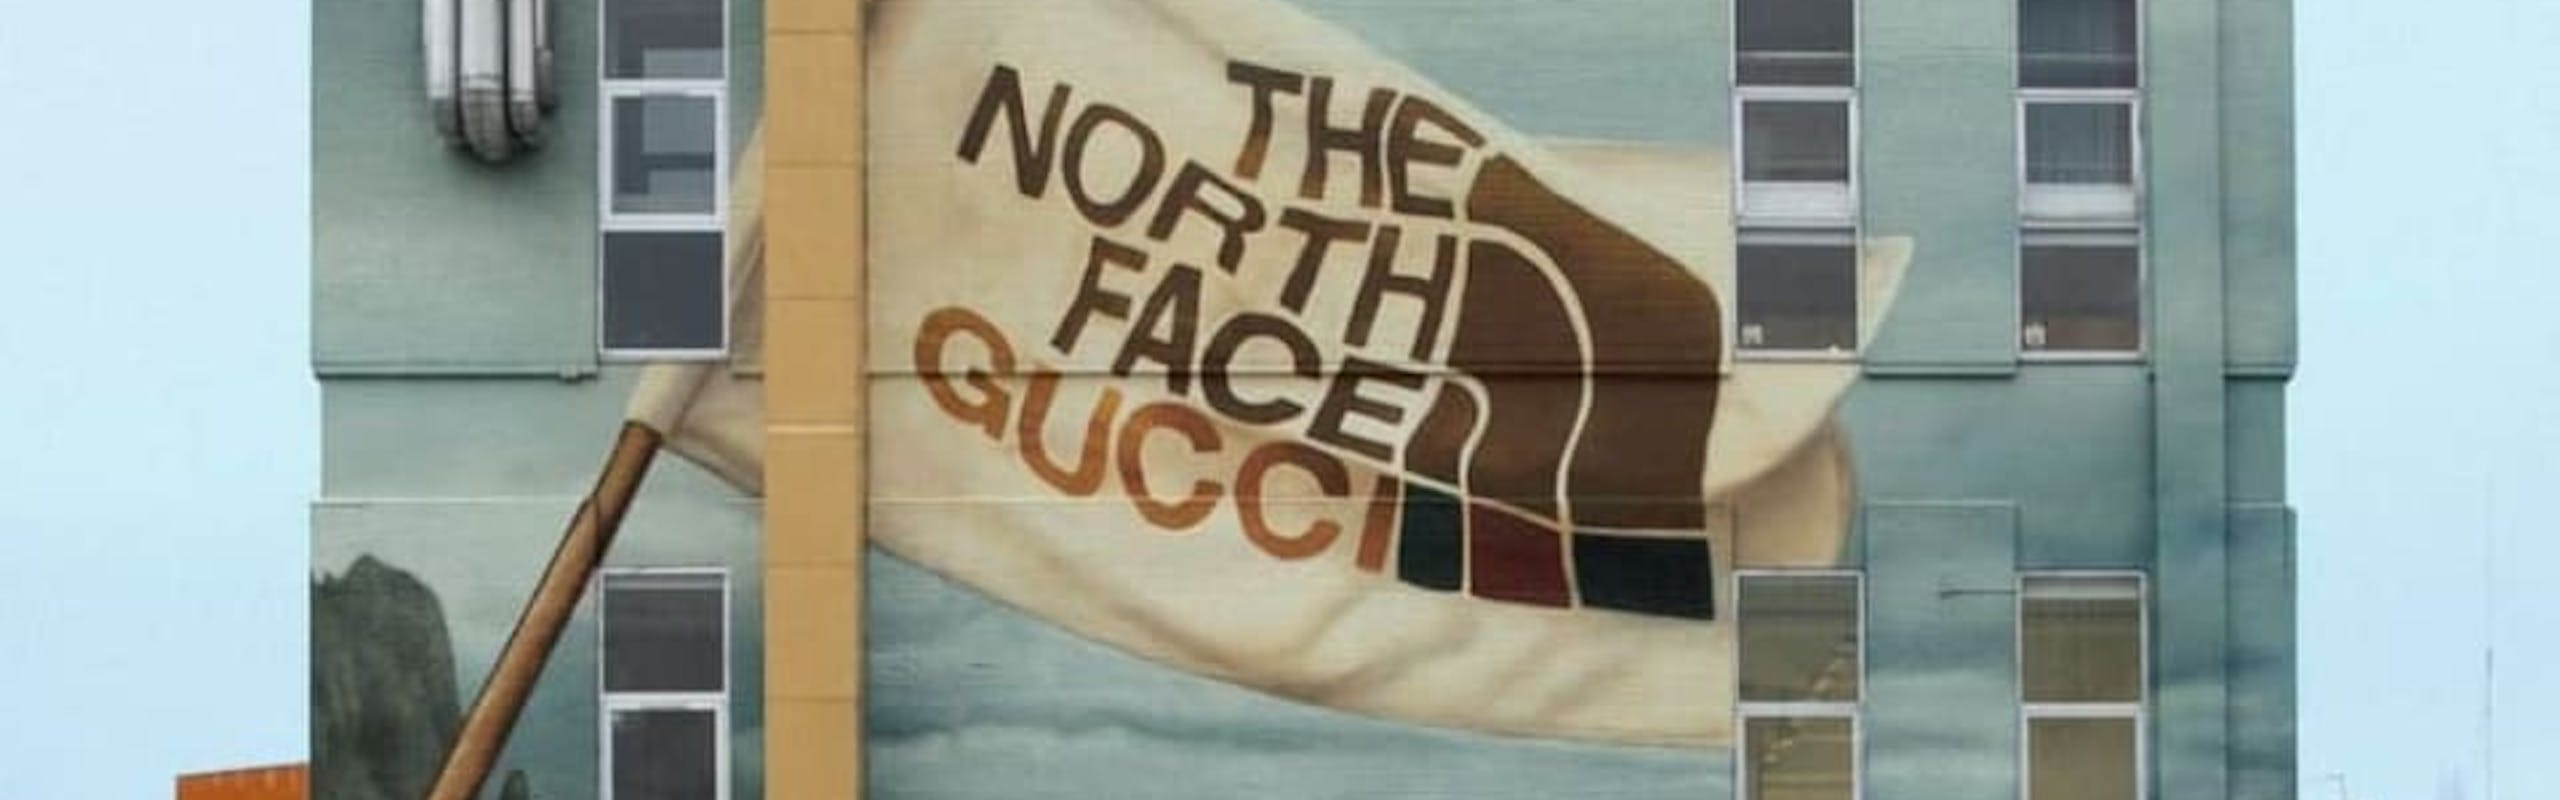 The North Face e Gucci